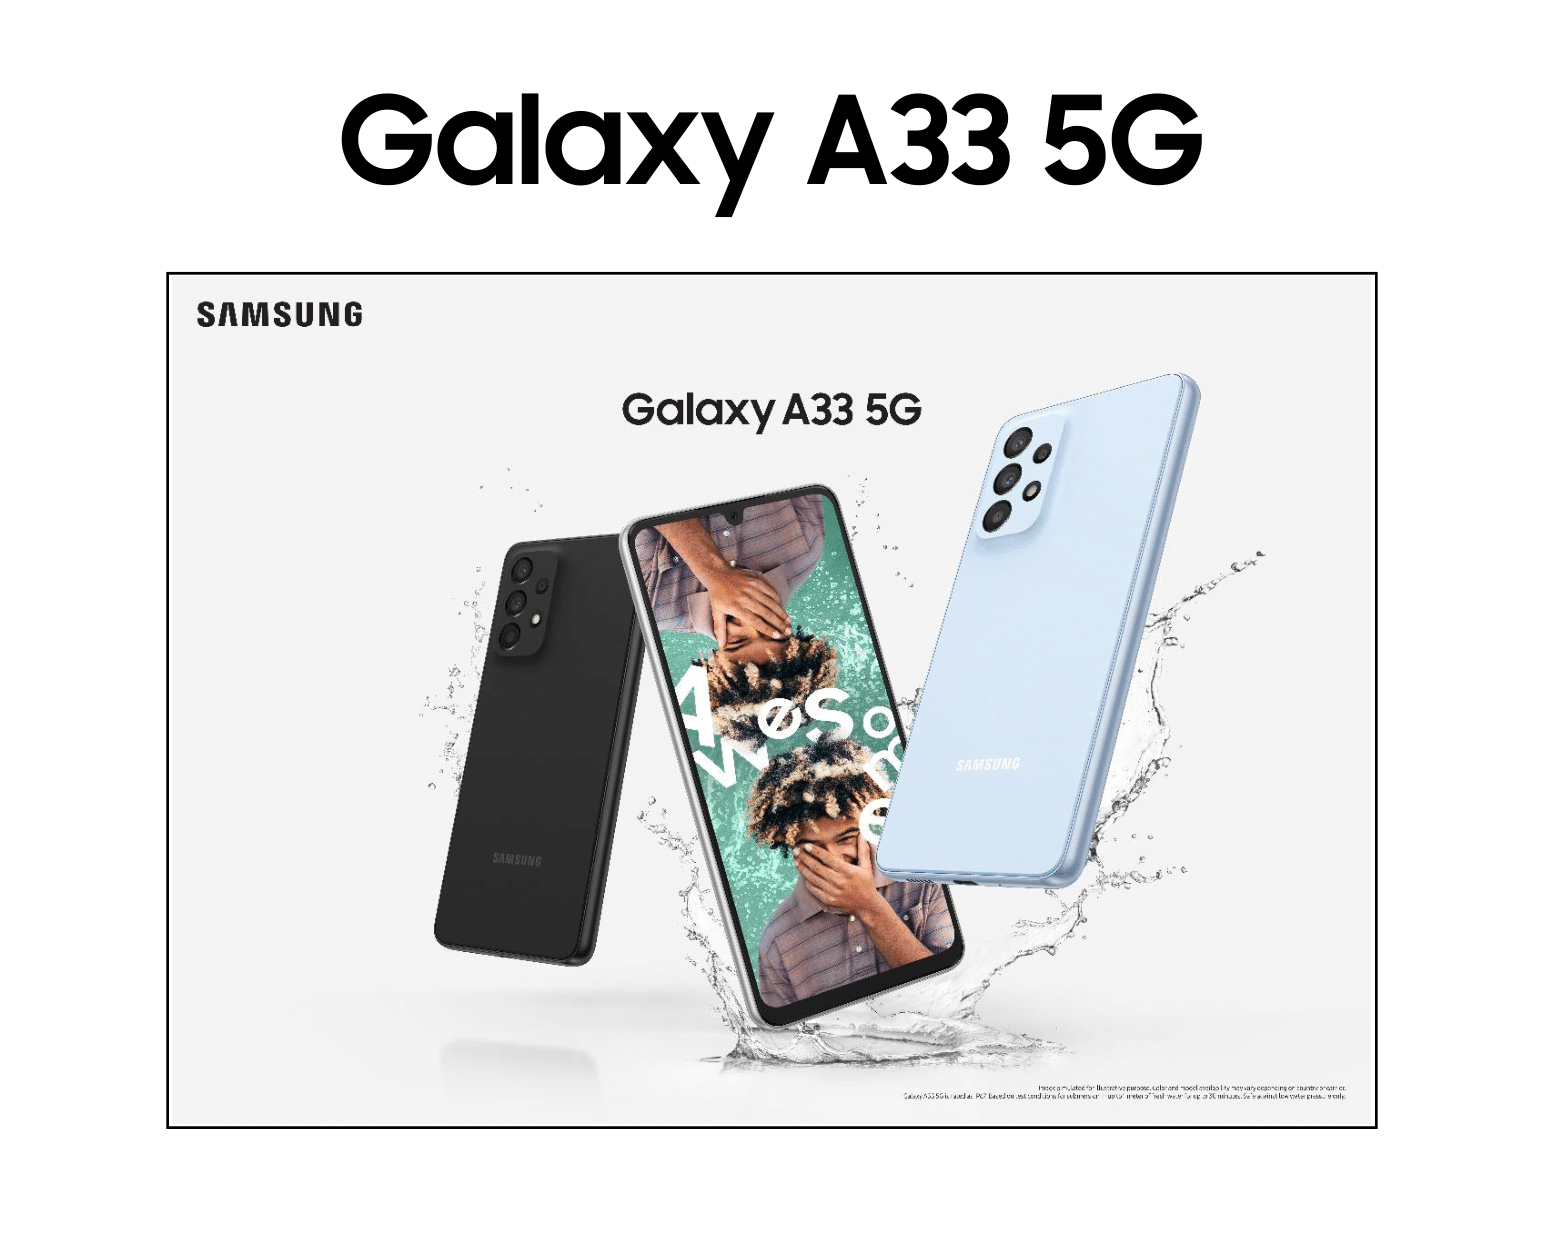 三星 Galaxy A33 5g 完整规格、定价和渲染图揭晓